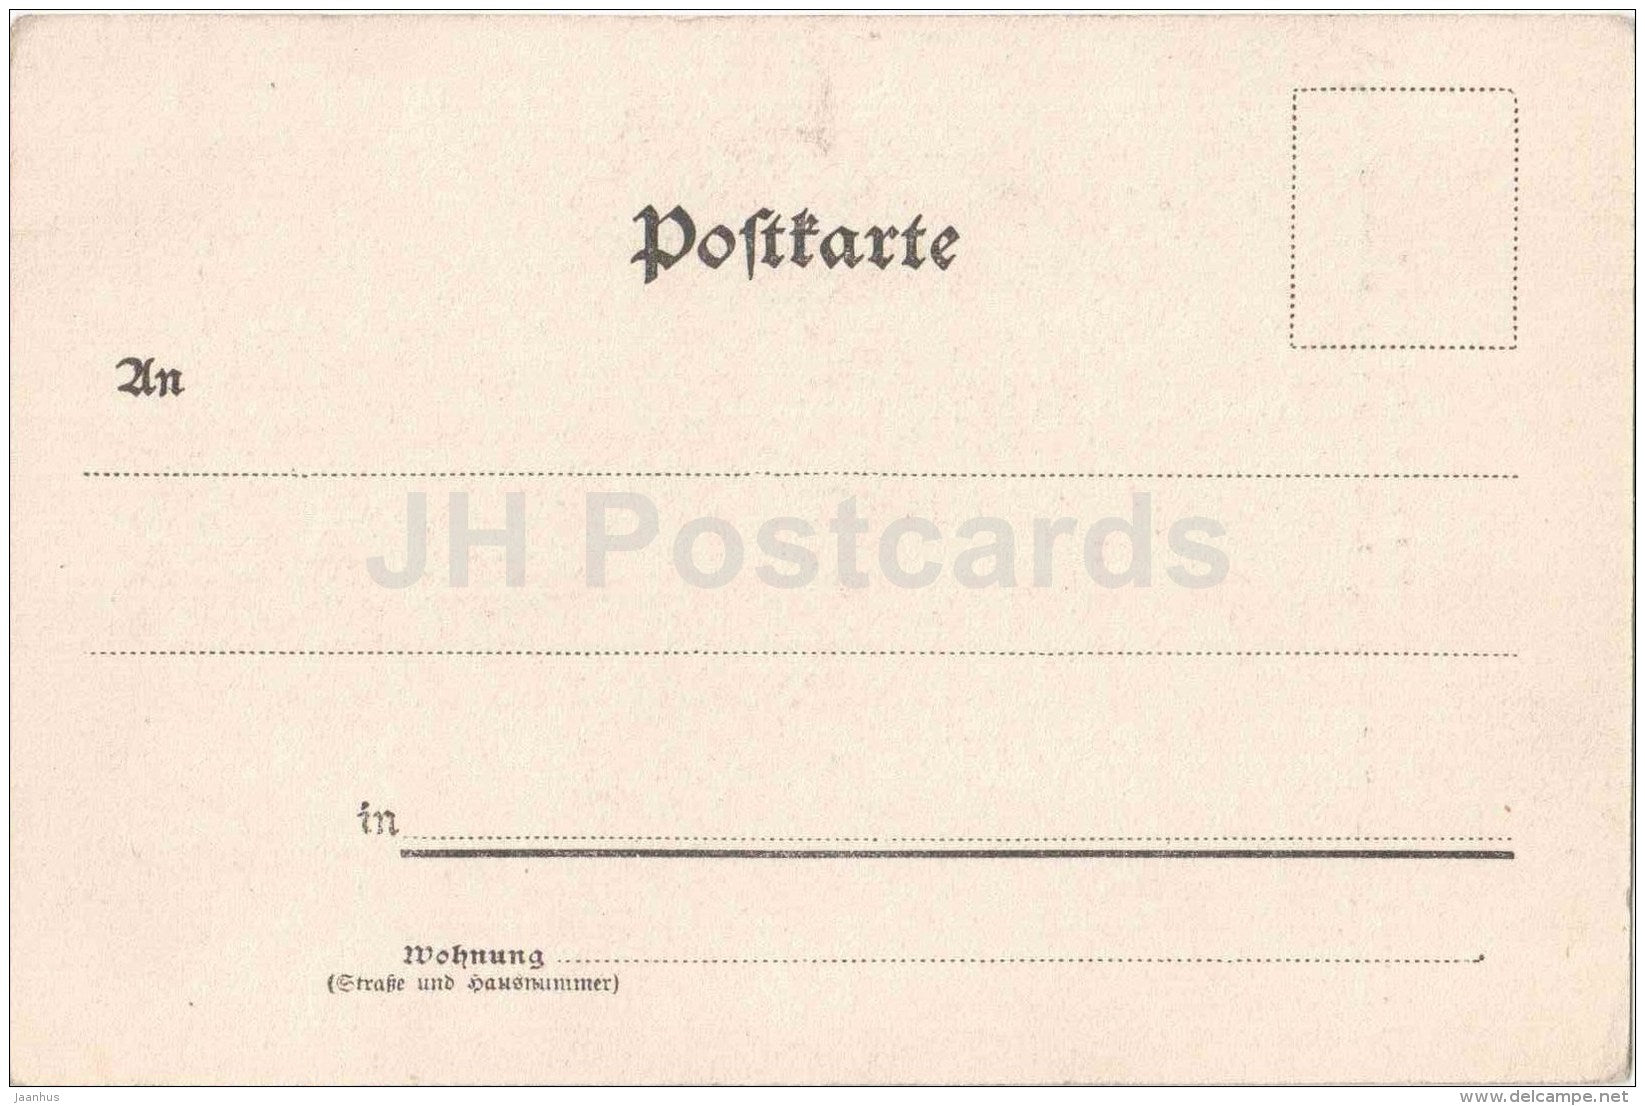 Rechter Brunnen vor der k. k. Hofburg: Die Macht zu Lande - Wien - Vienna - Austria - old postcard - unused - JH Postcards